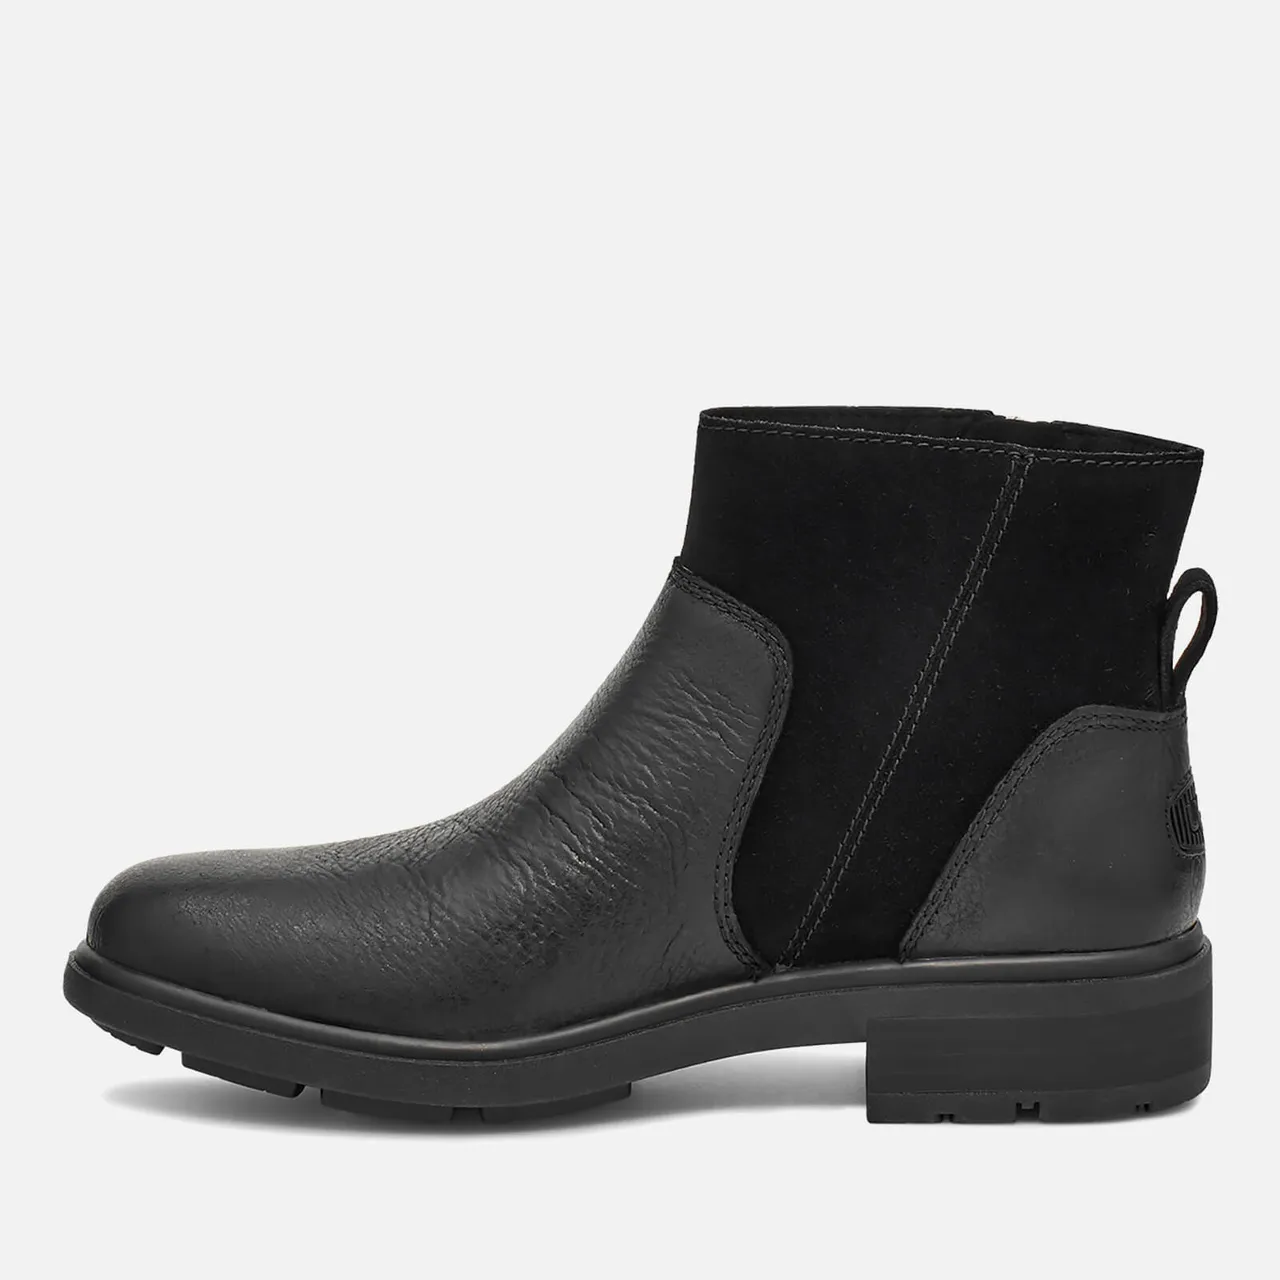 UGG Women's Harrison Zip Waterproof Leather Ankle Boots - Black - UK